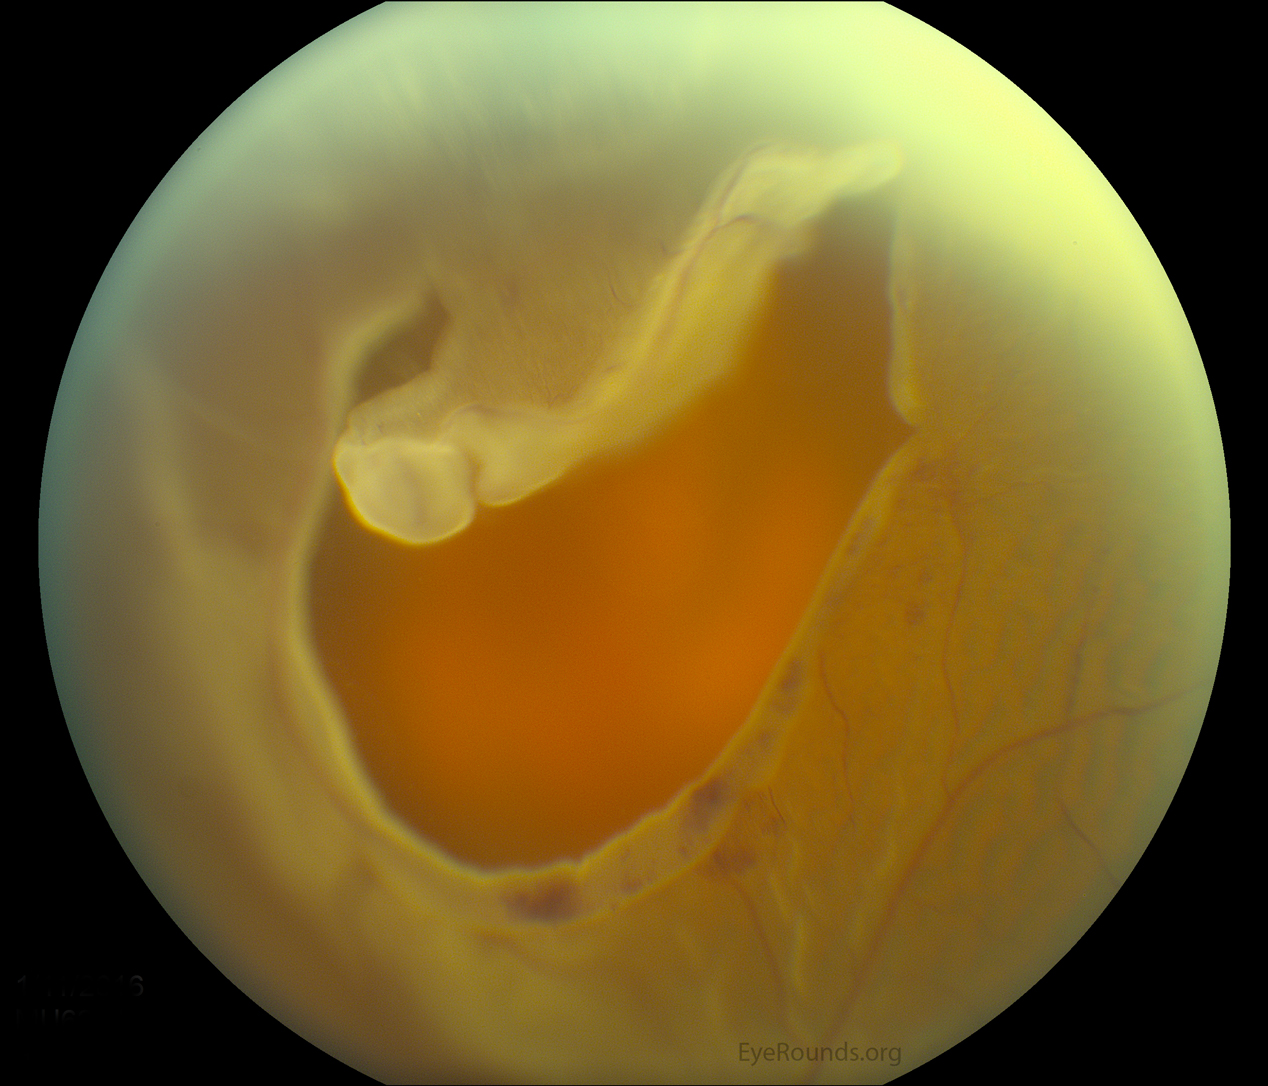 large, superior horseshoe tear with a bullous retinal detachment